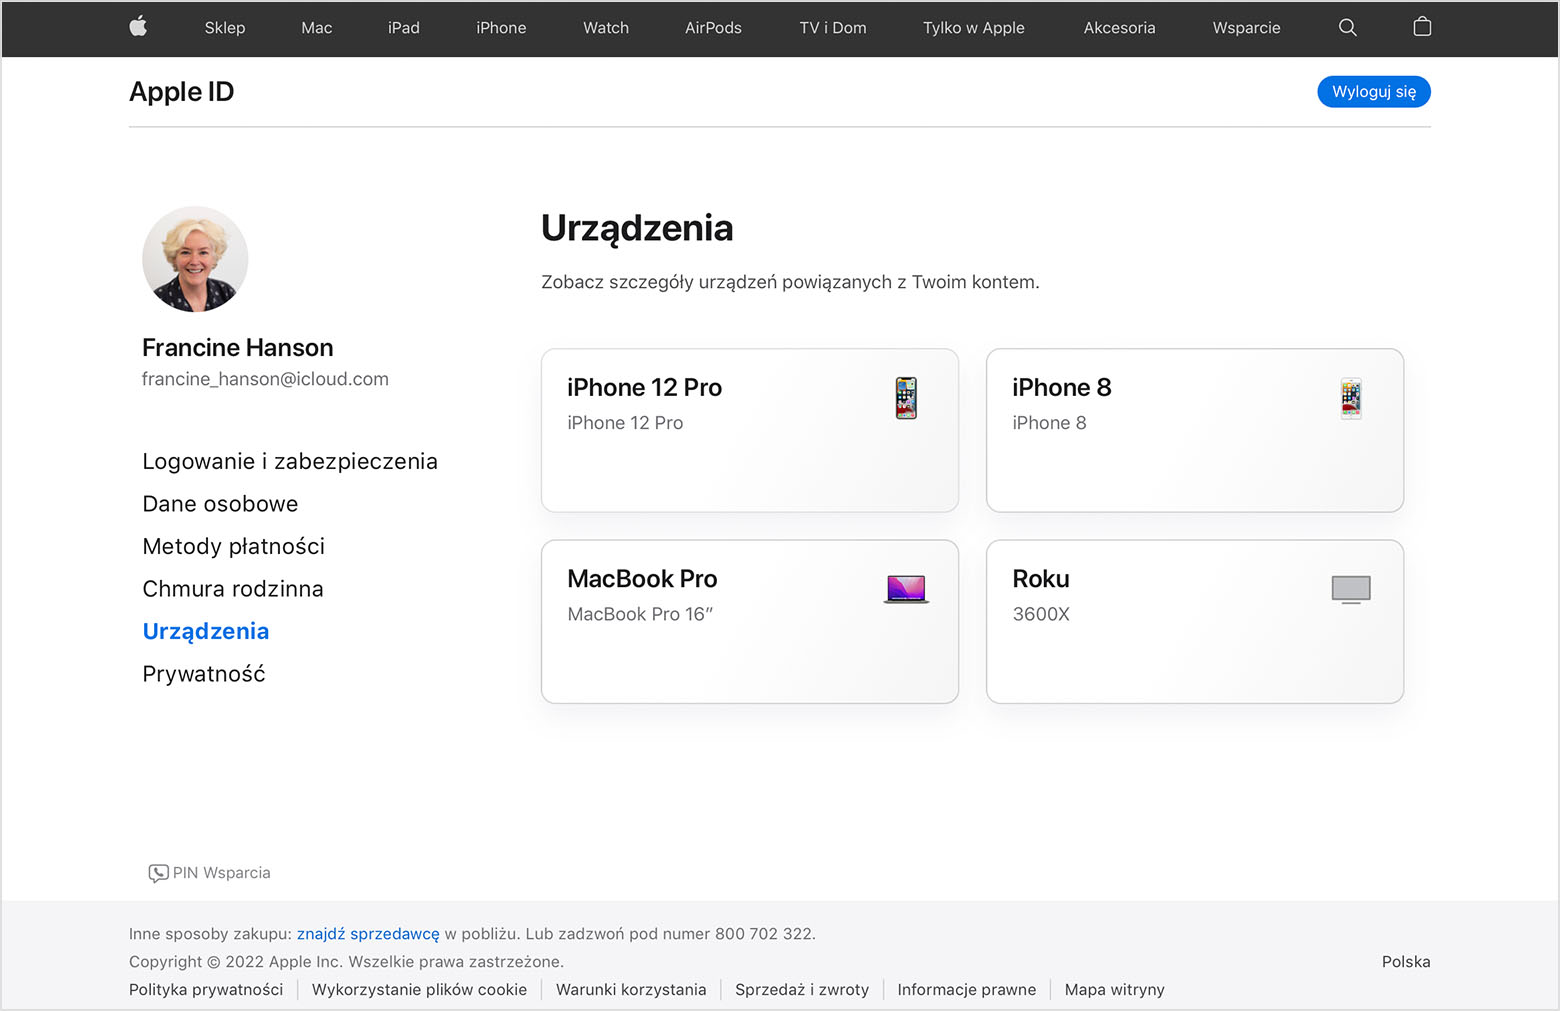 Obraz strony appleid.apple.com wyświetlający trzy urządzenia dla użytkowniczki Francine Hanson: telefon iPhone 12 Pro, MacBooka Pro i urządzenie Roku.